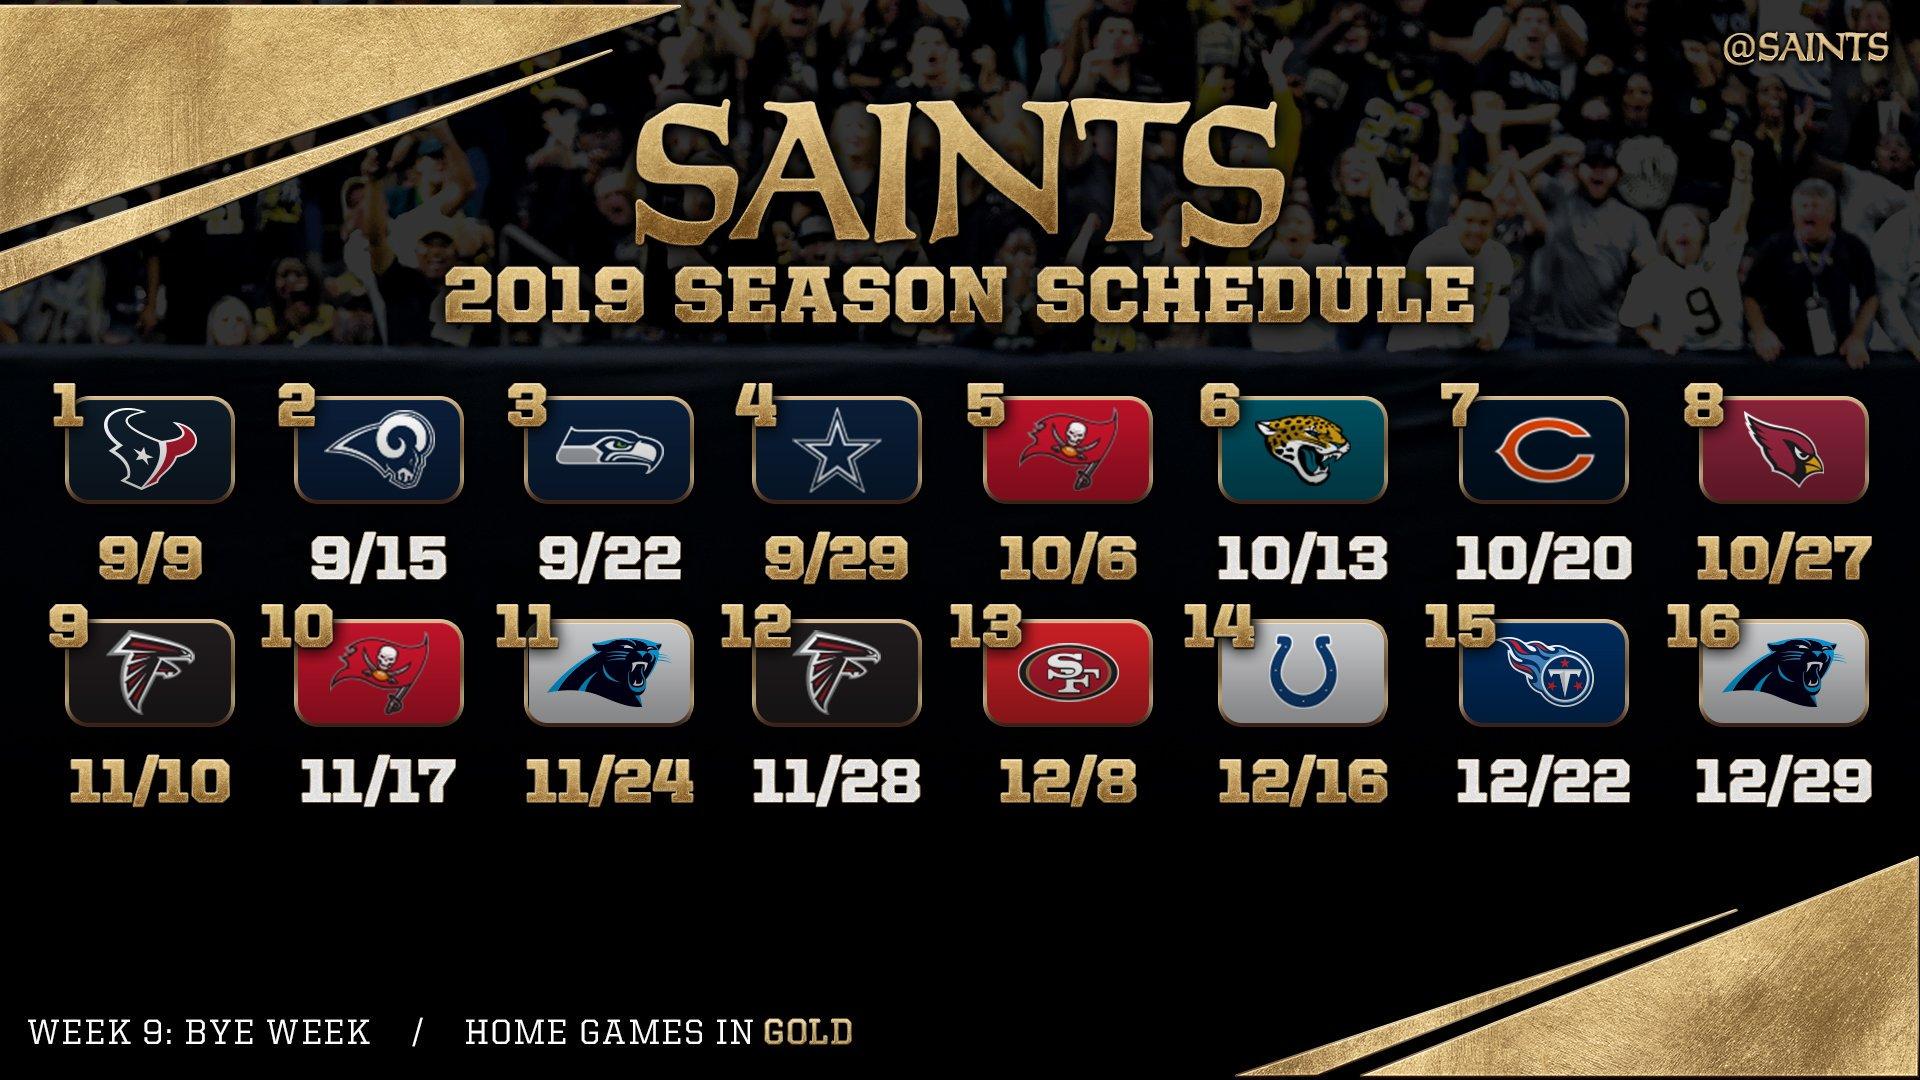 New Orleans Saints Orleans Saints open season